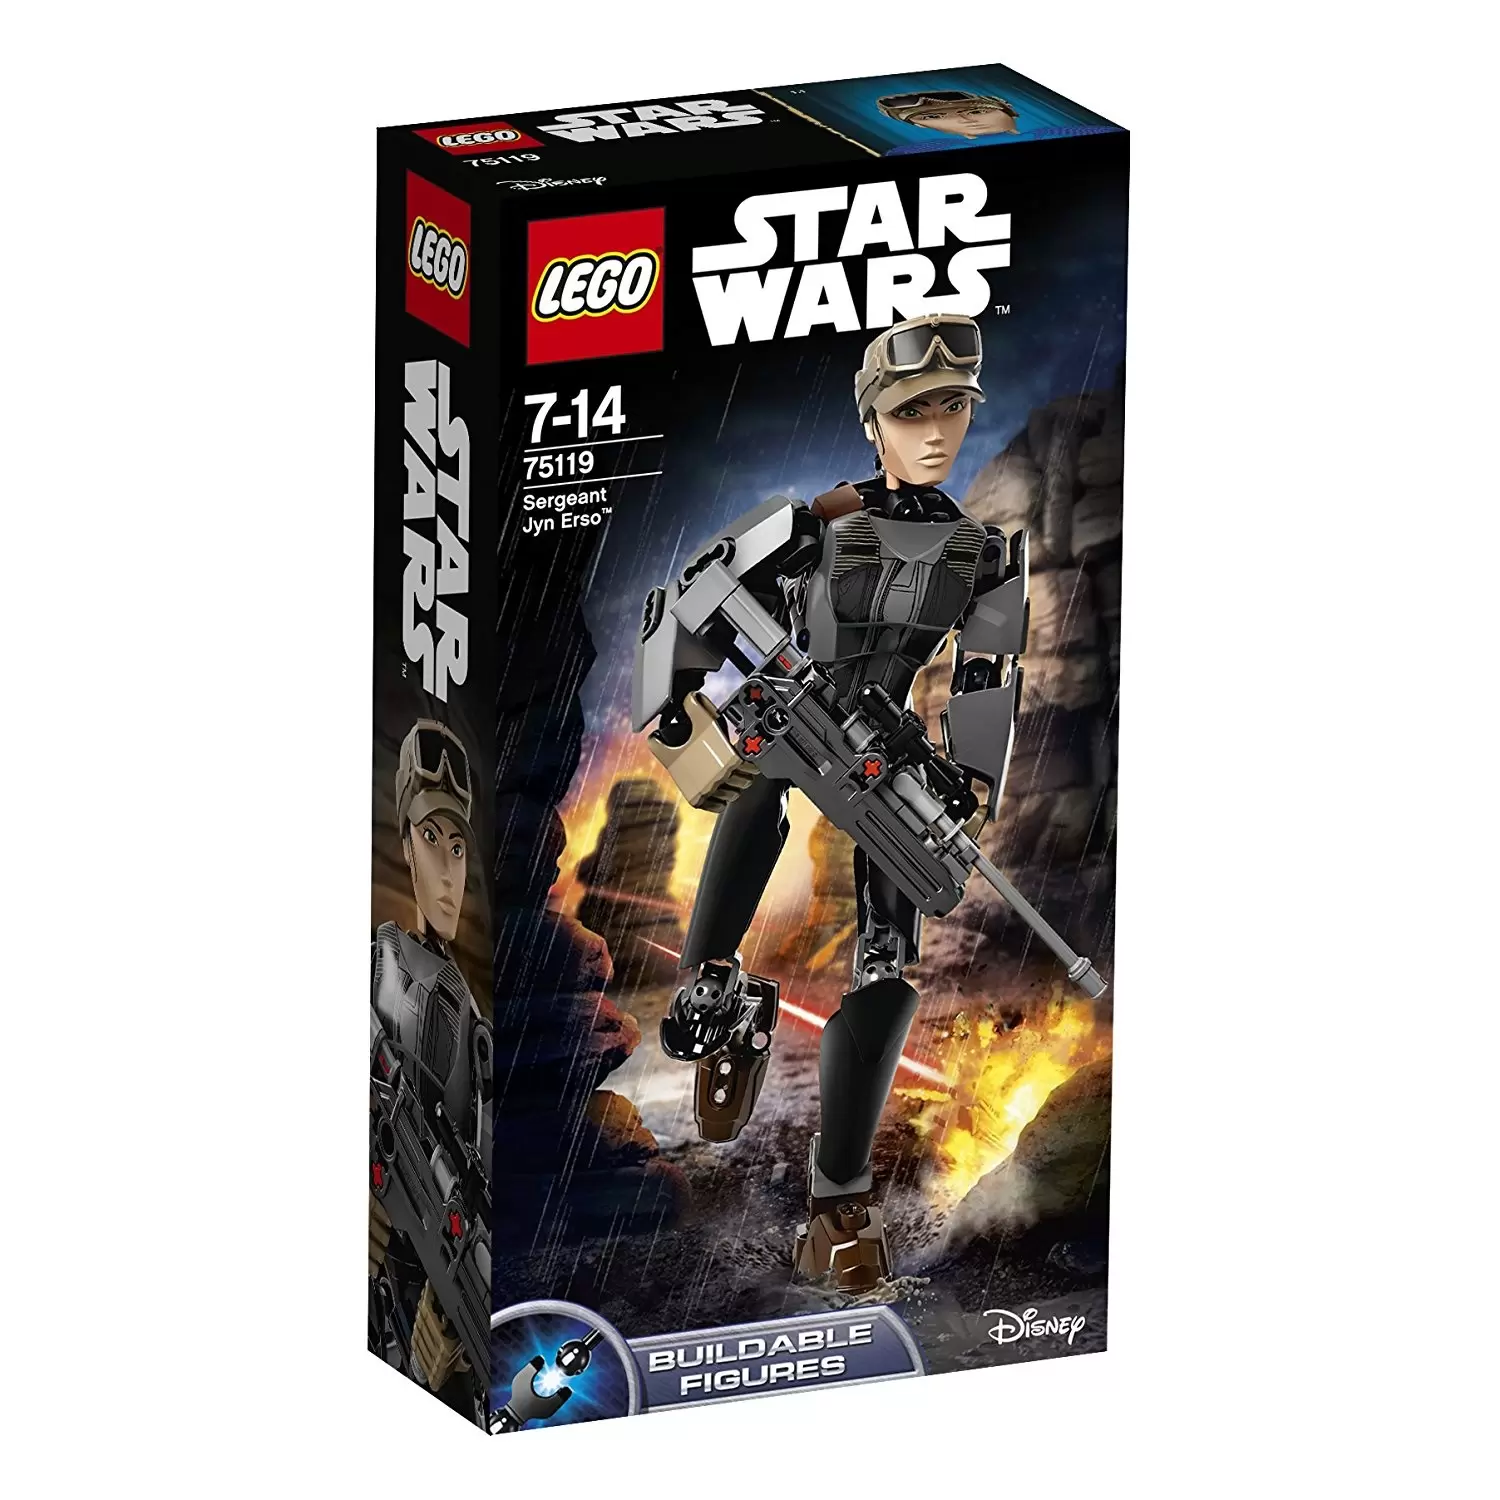 LEGO Star Wars - Sergeant Jyn Erso